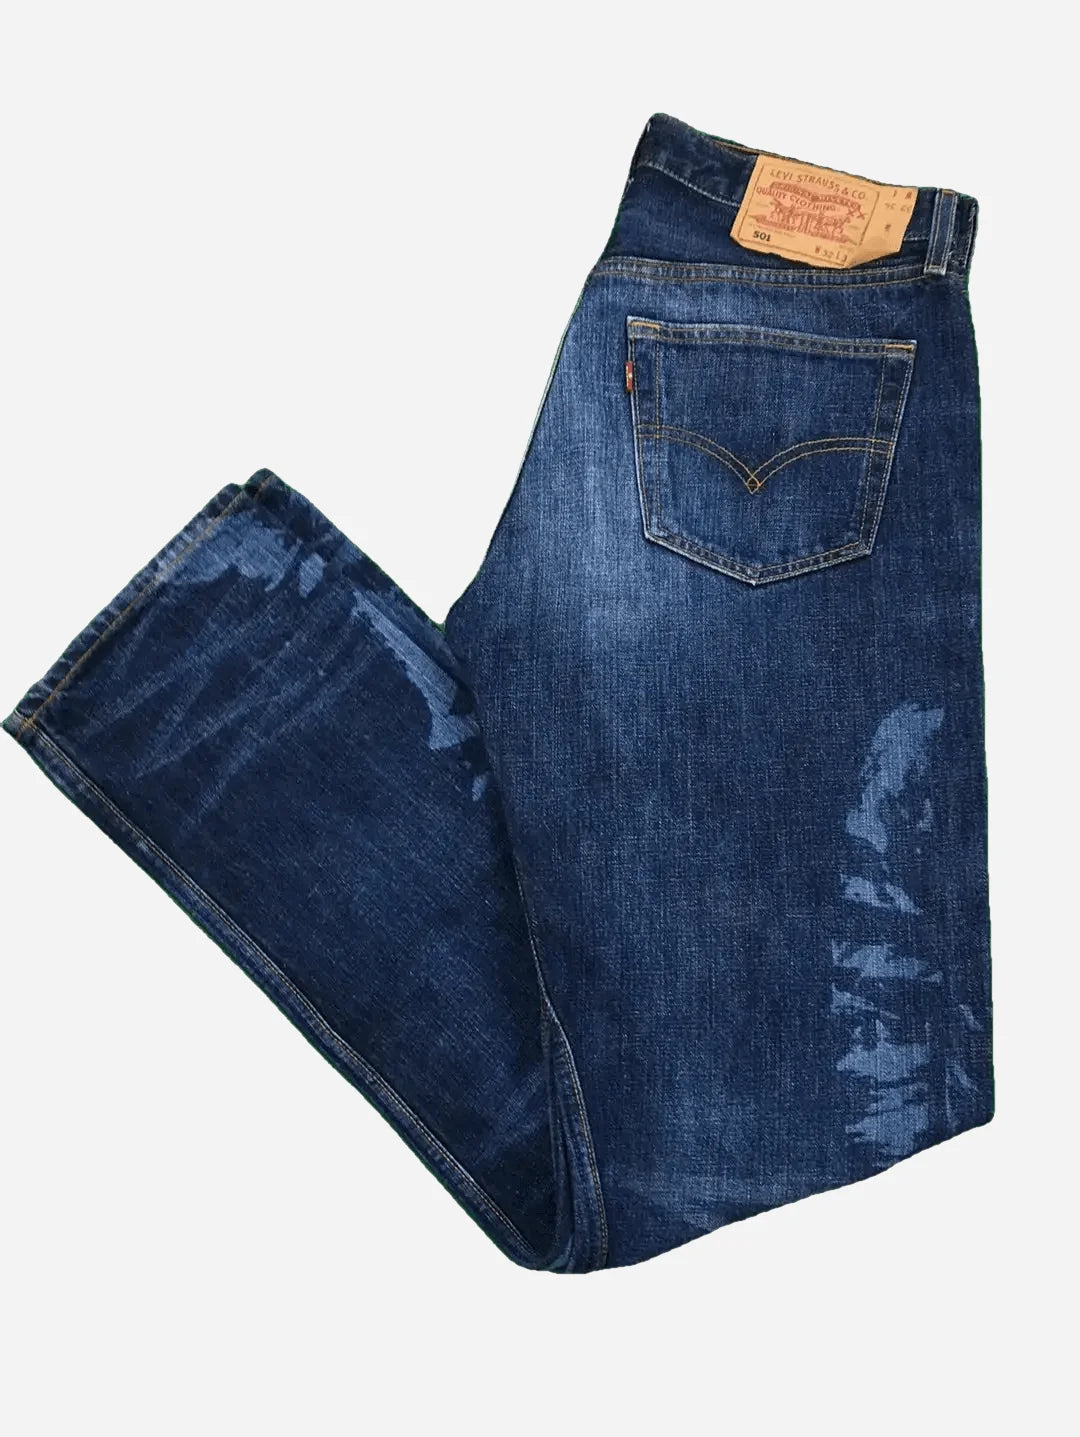 Levi’s 501 Custom Jeans 32/34 (L)